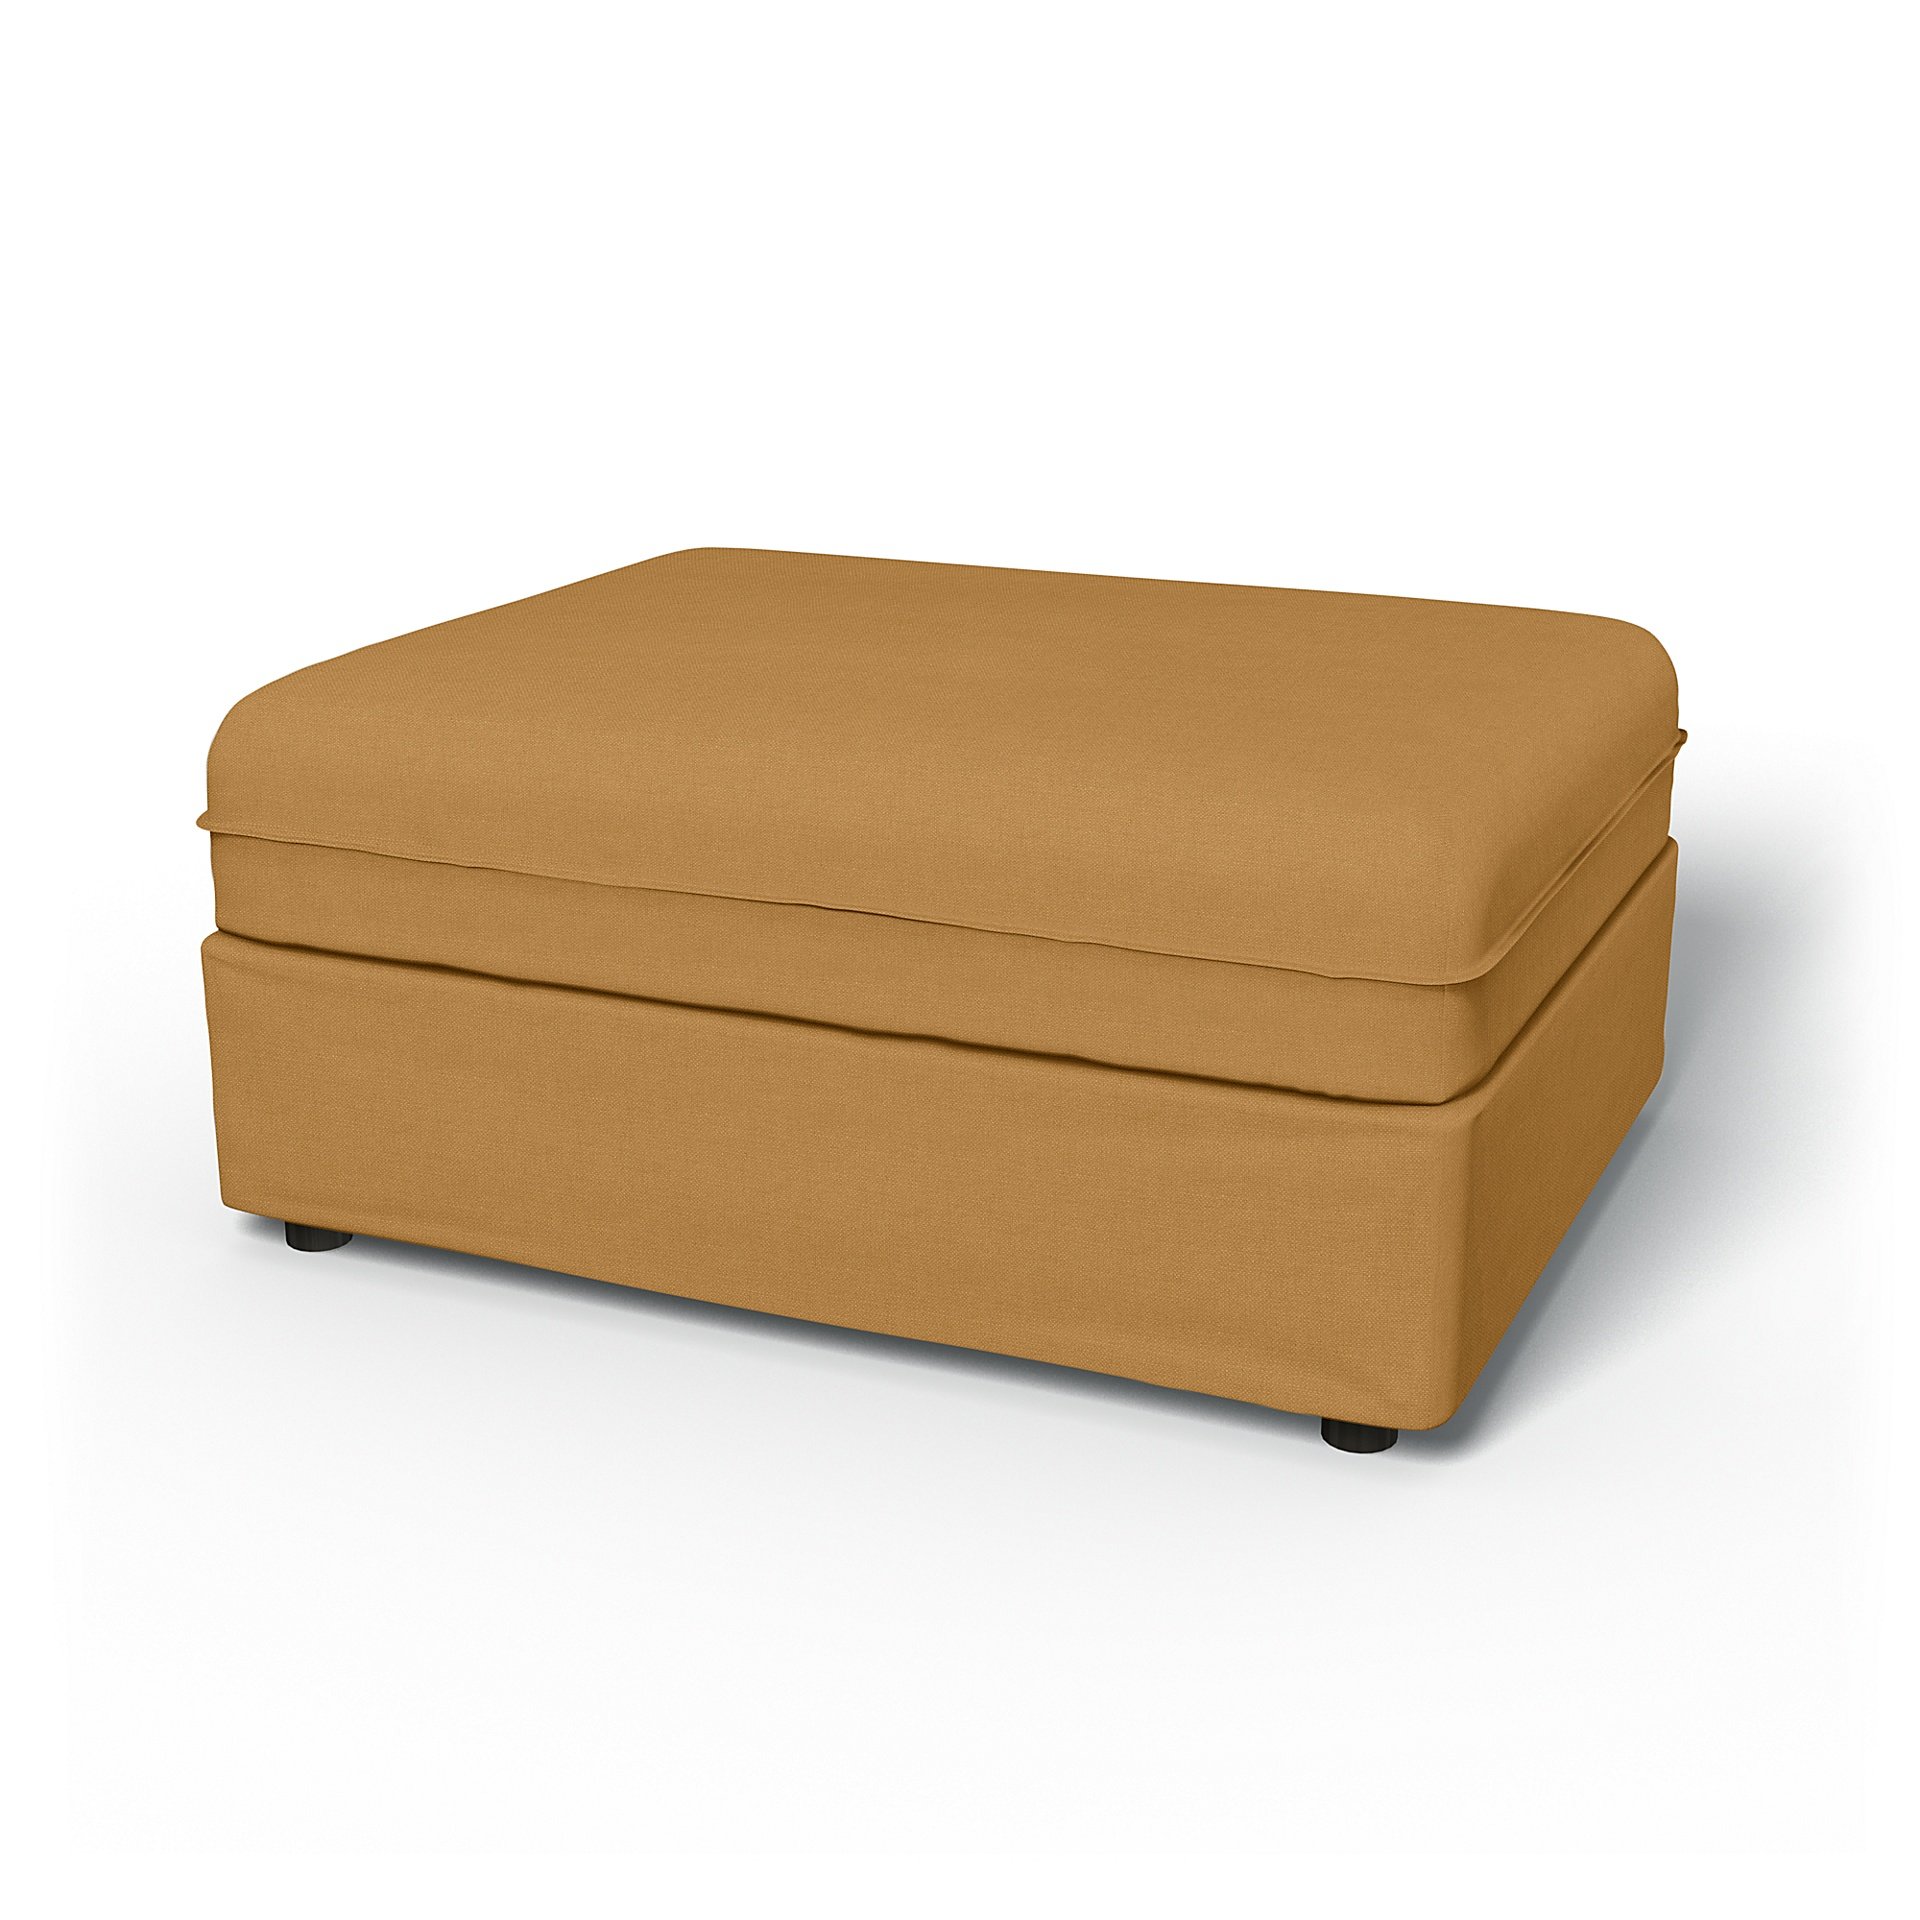 IKEA - Vallentuna Seat Module Cover 100x80cm 39x32in, Mustard, Linen - Bemz